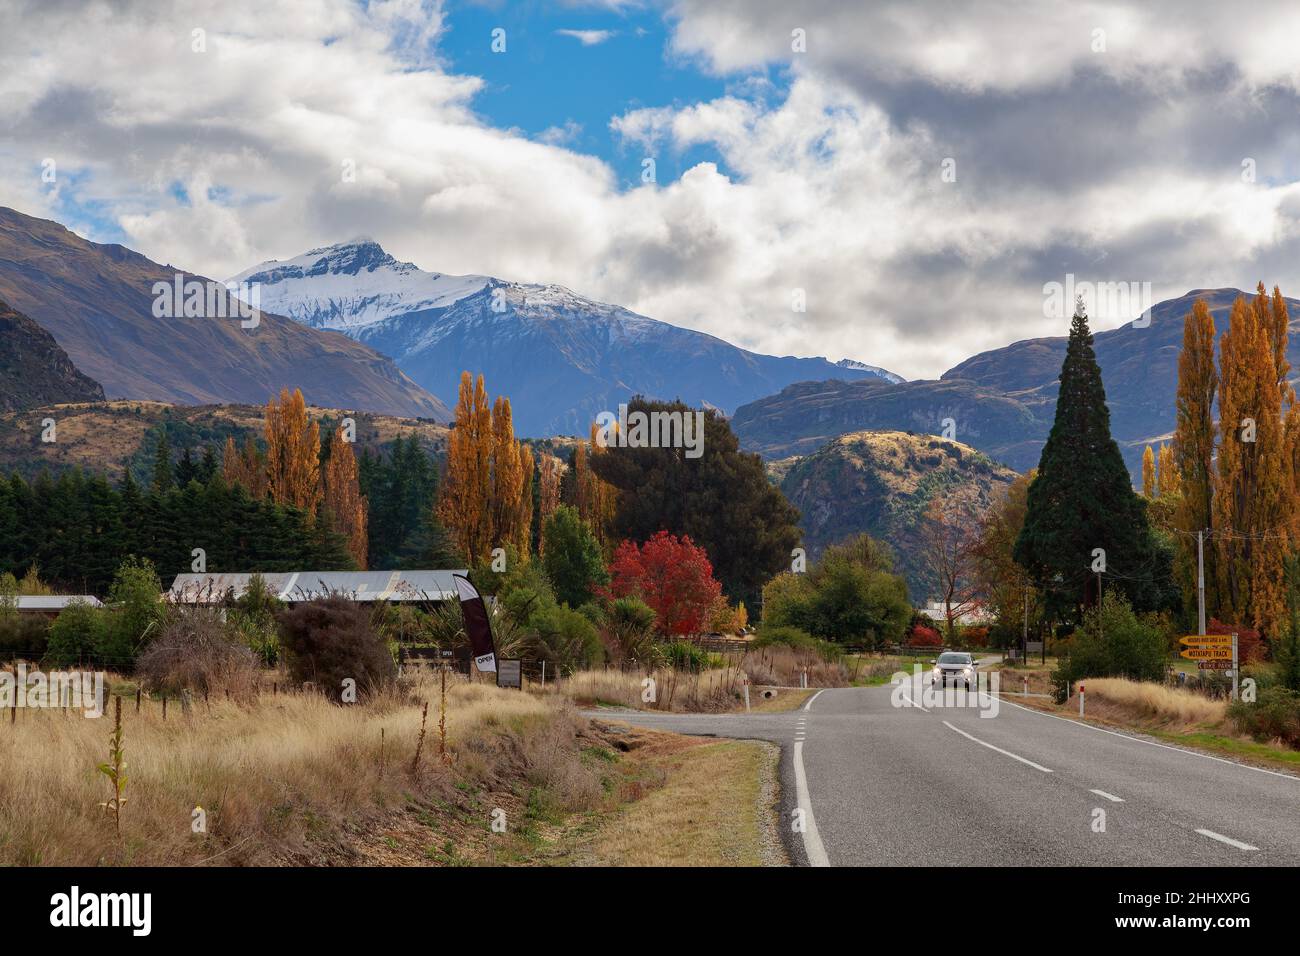 Una carretera rural conduce a las montañas de la región de Otago, Nueva Zelanda. Fotografiado en otoño Foto de stock